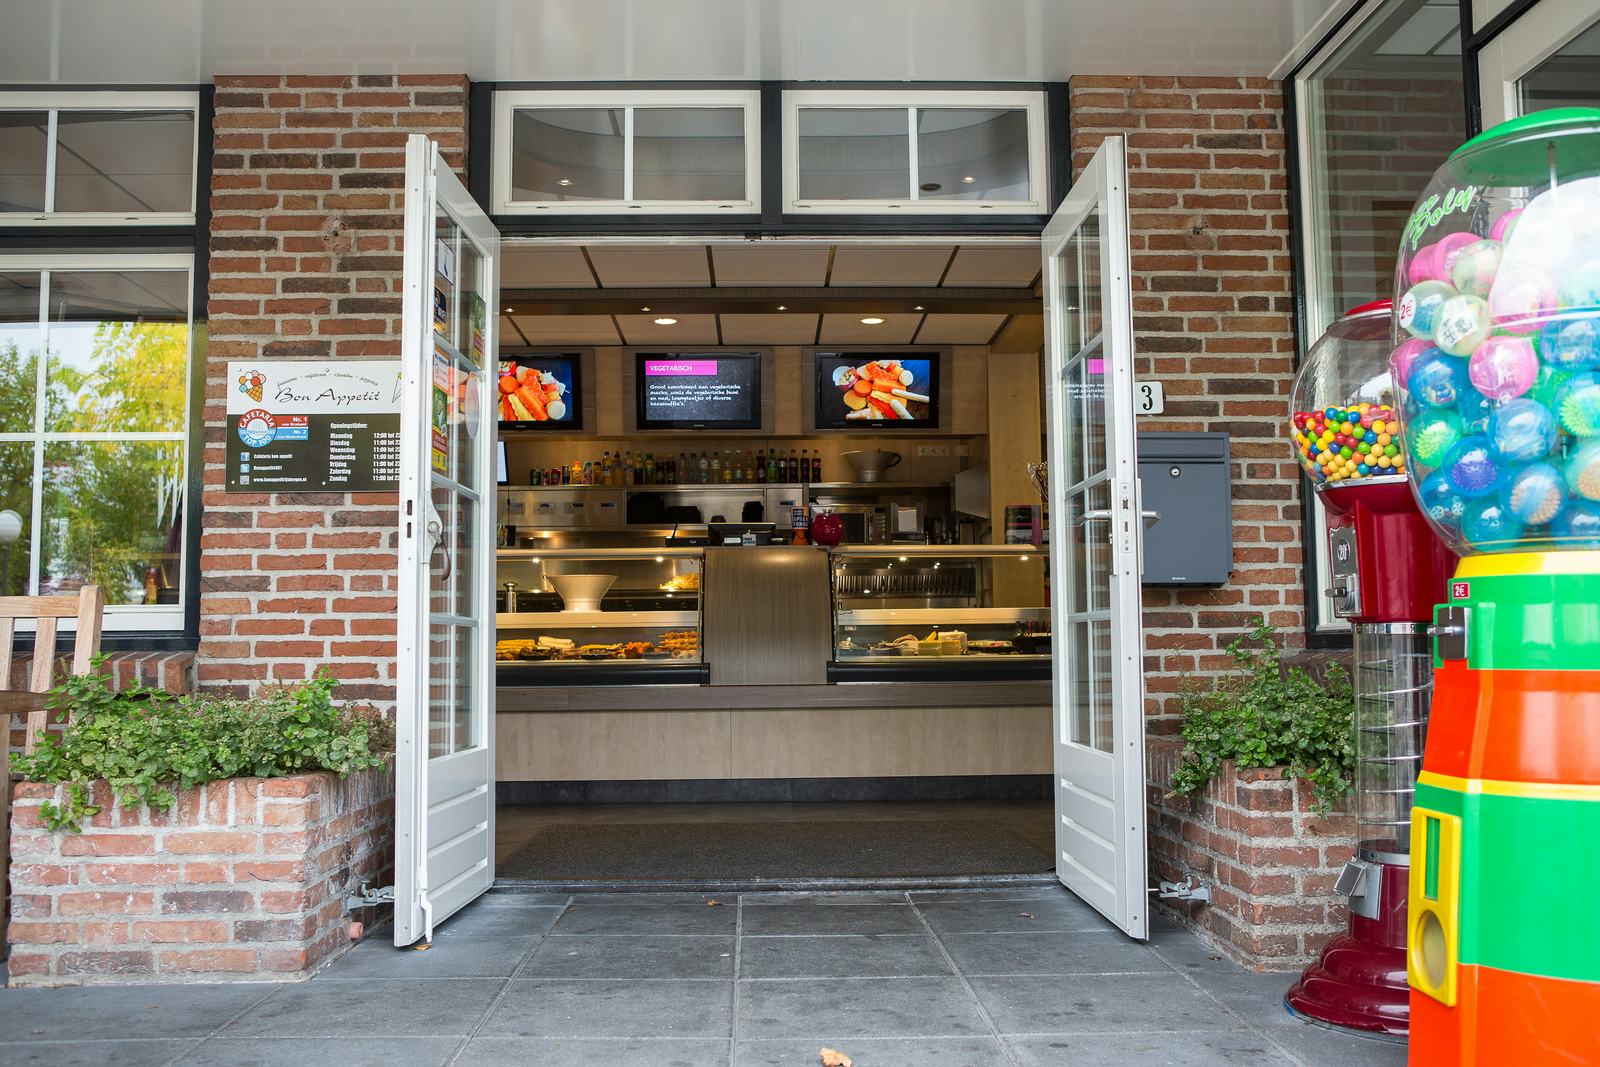 Binnenkijken bij beste cafetaria van Nederland 2014: Bon Appetit